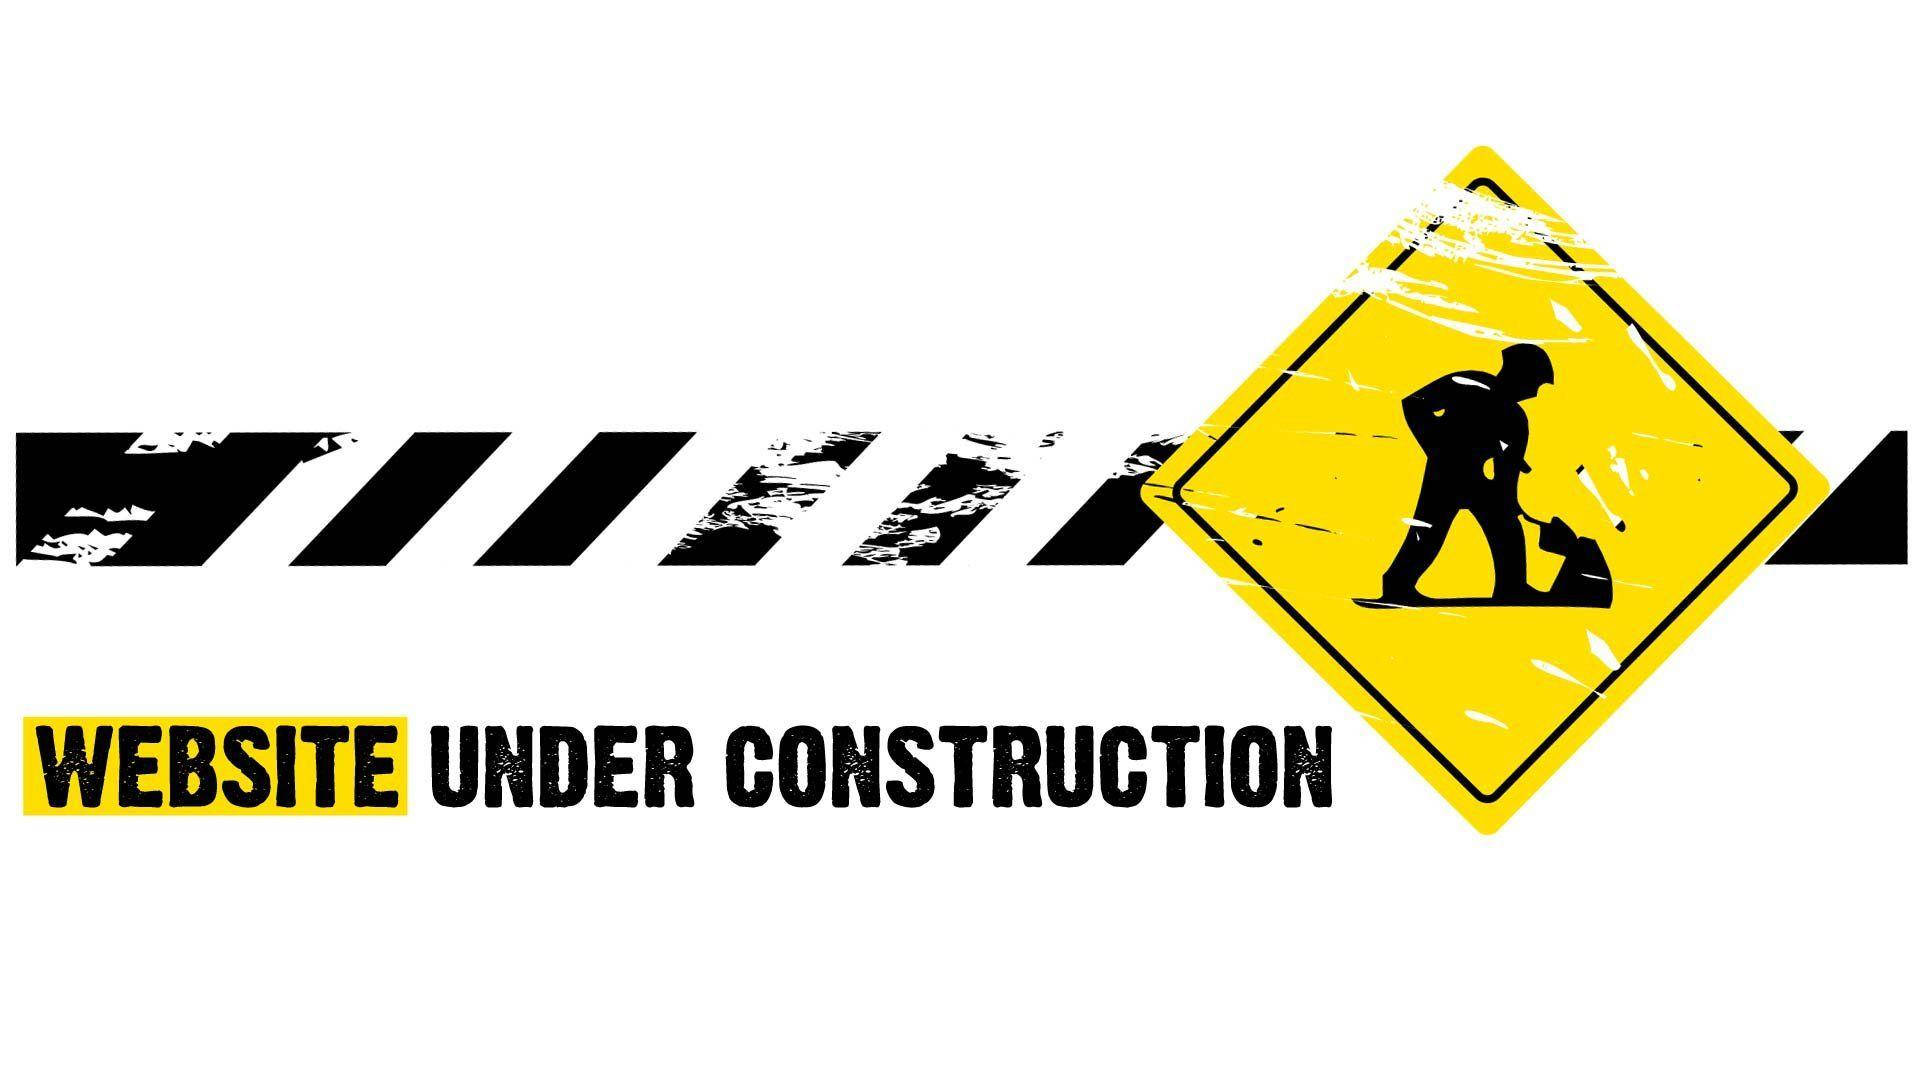 Website Under Construction Maintenance Warning Sign Wallpaper